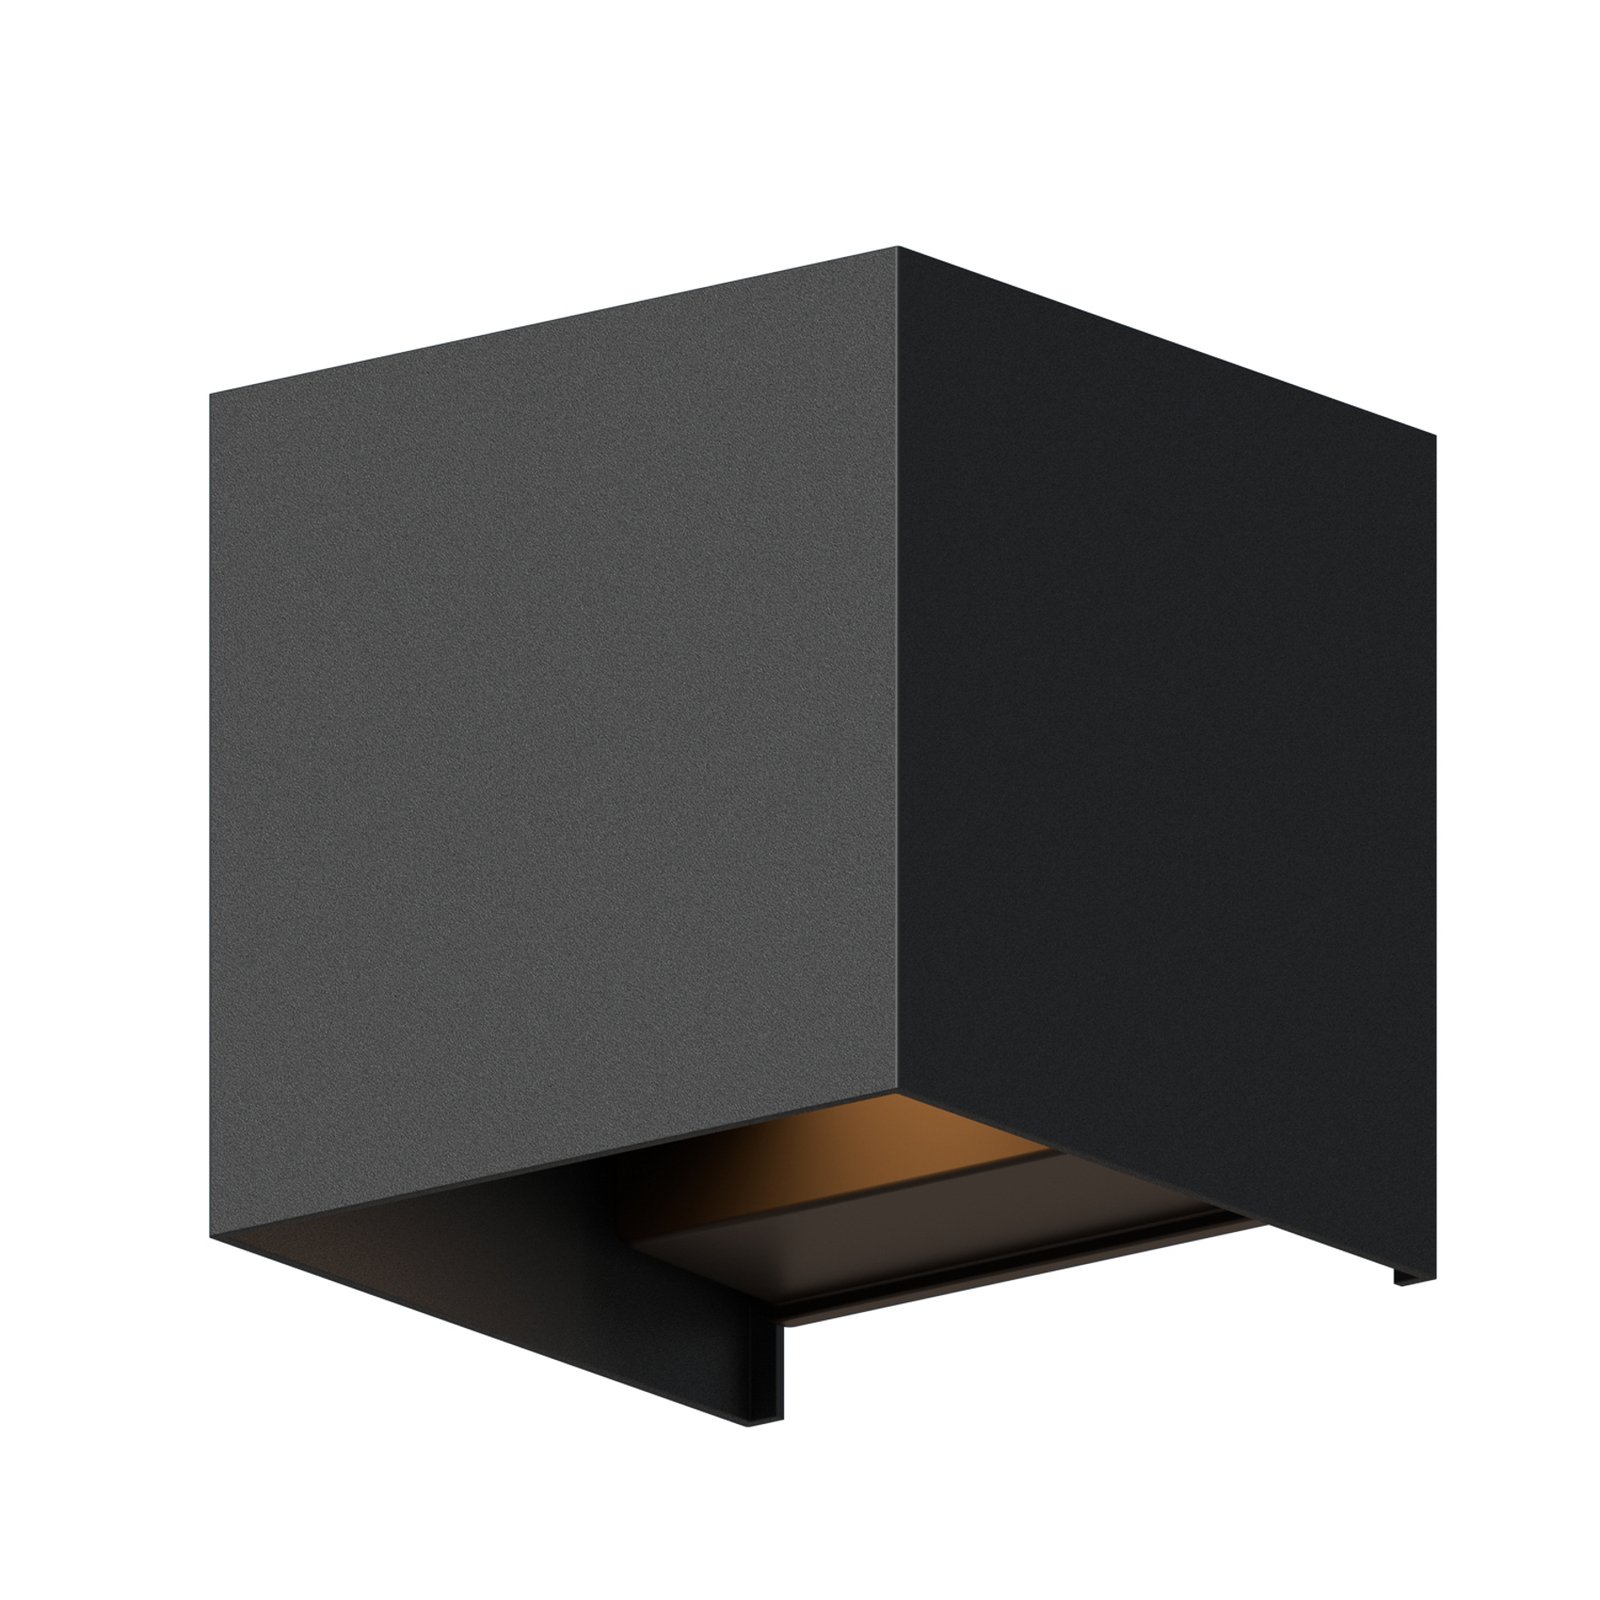 Venkovní nástěnné svítidlo Calex LED Cube, nahoru/dolů, výška 10 cm, černé